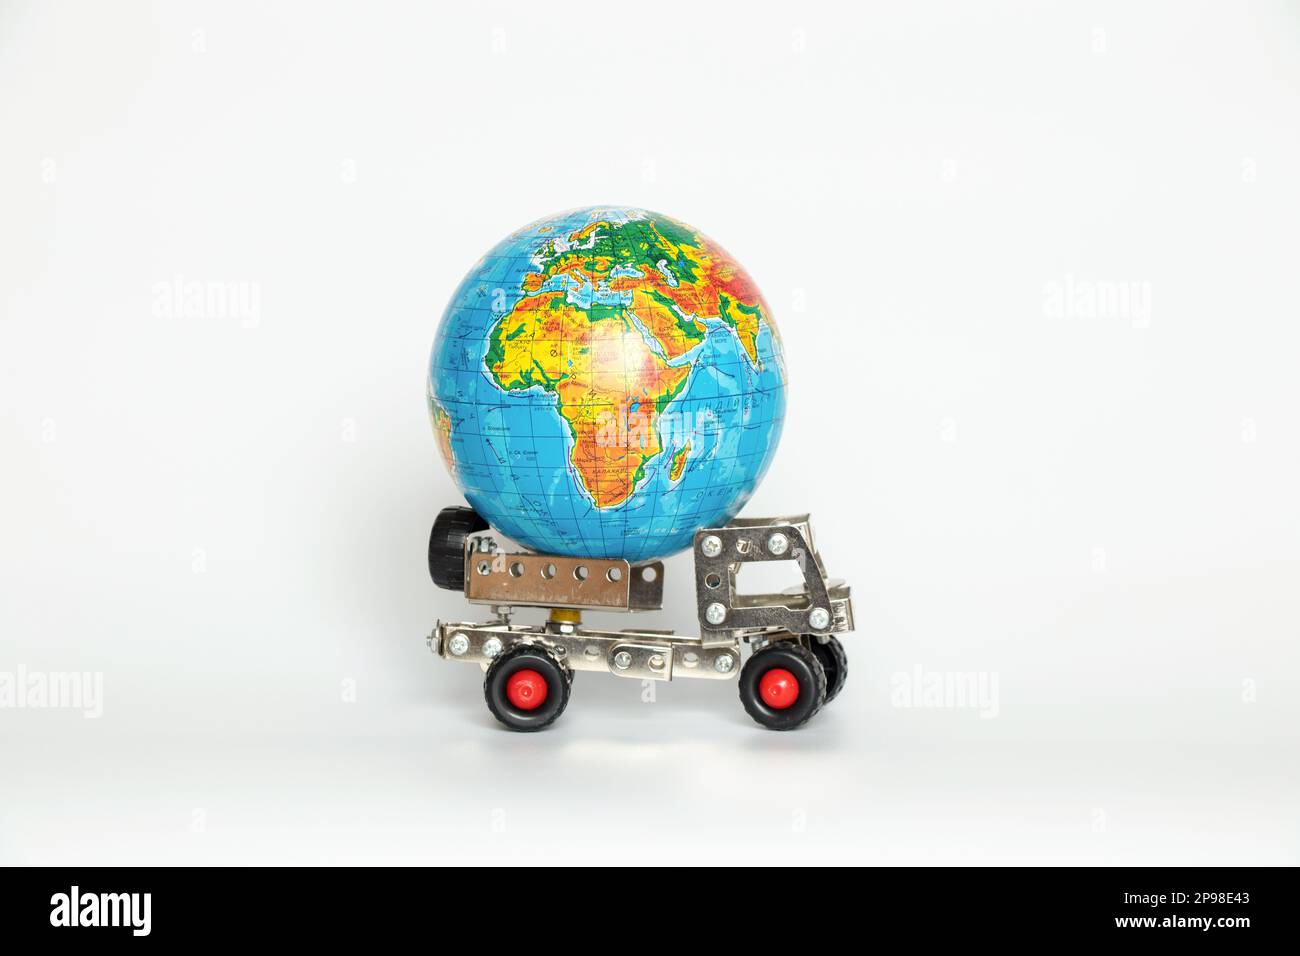 Globus auf einem kleinen Kinderwagen auf weißem Hintergrund, internationaler Transport, Logistik und Lieferung Stockfoto